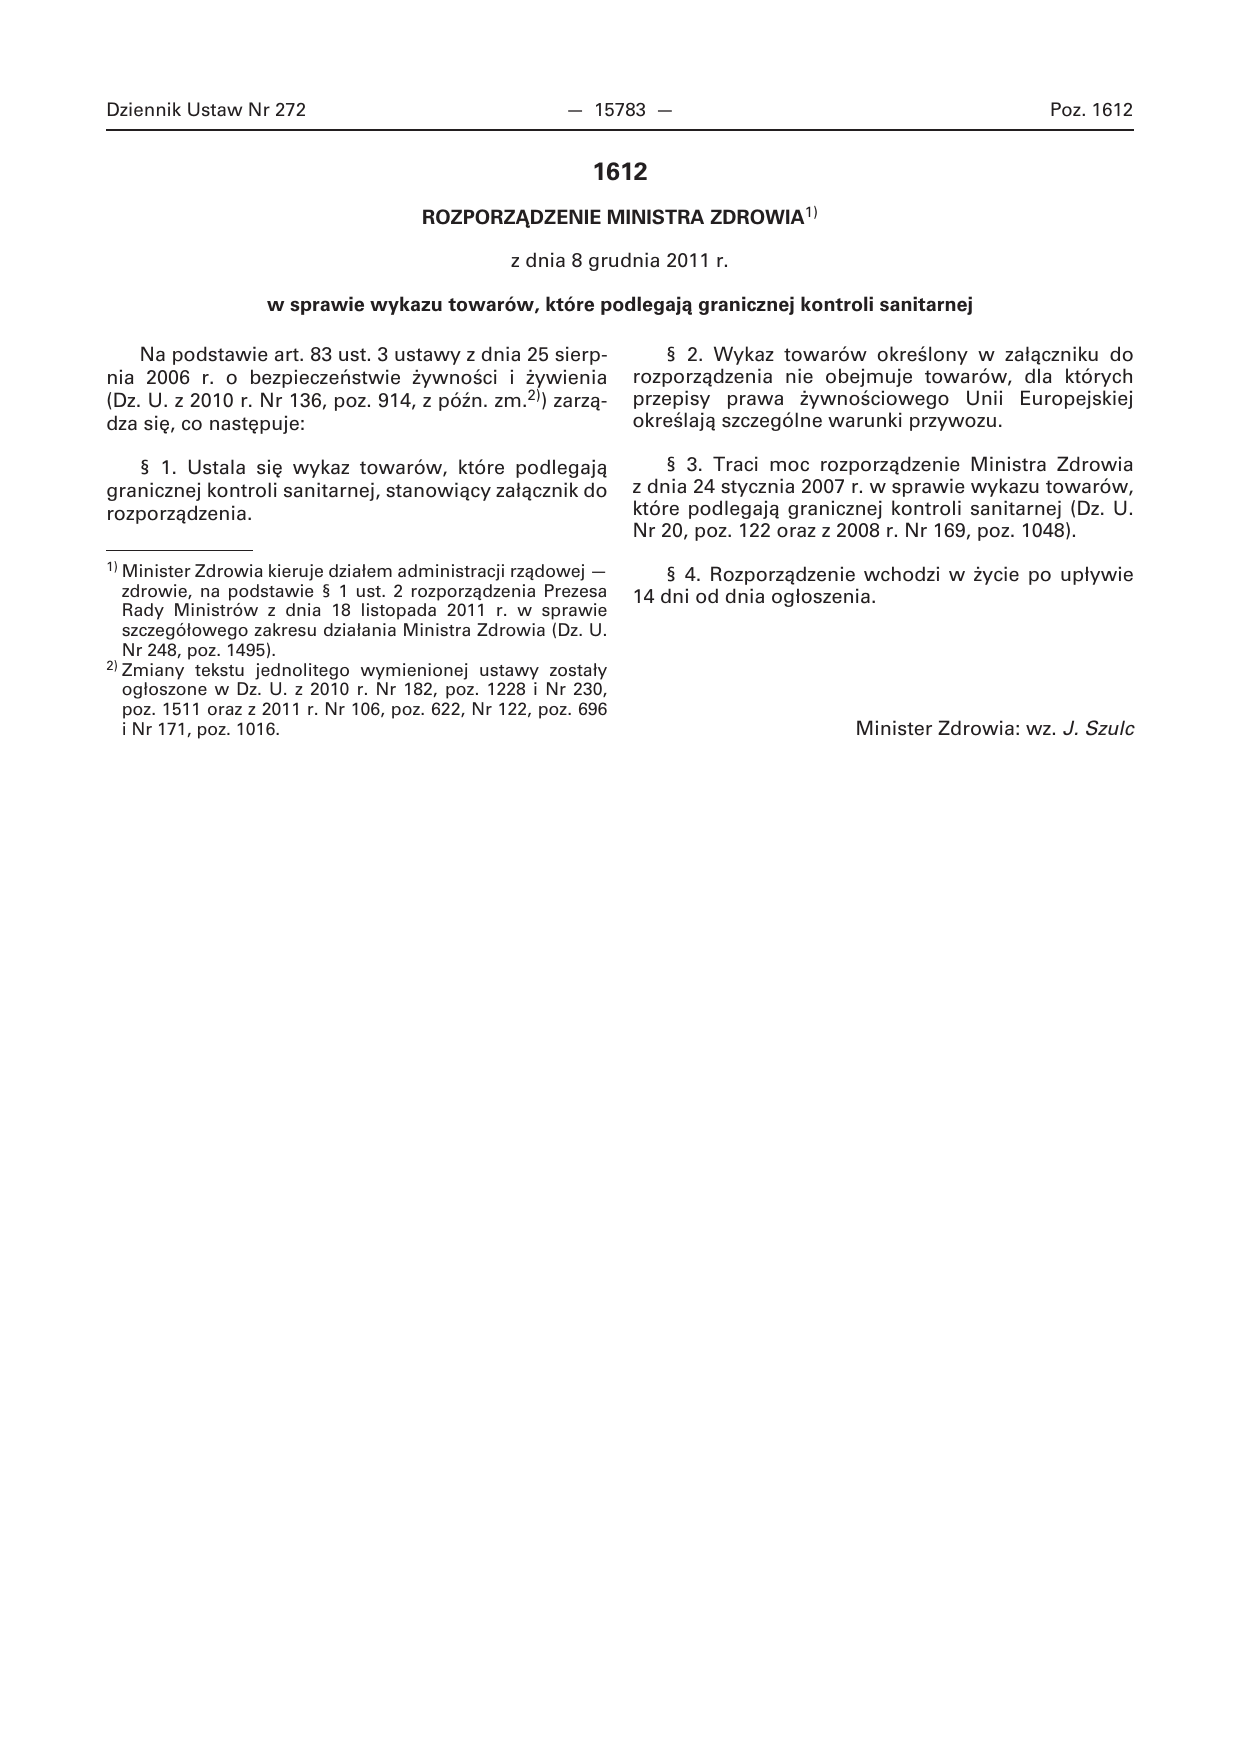 Art 3 Pkt 1 Ustawy Z Dnia 28 Listopada 2003 Na podstawie art. 83 ust. 3 ustawy z dnia 25 sierp